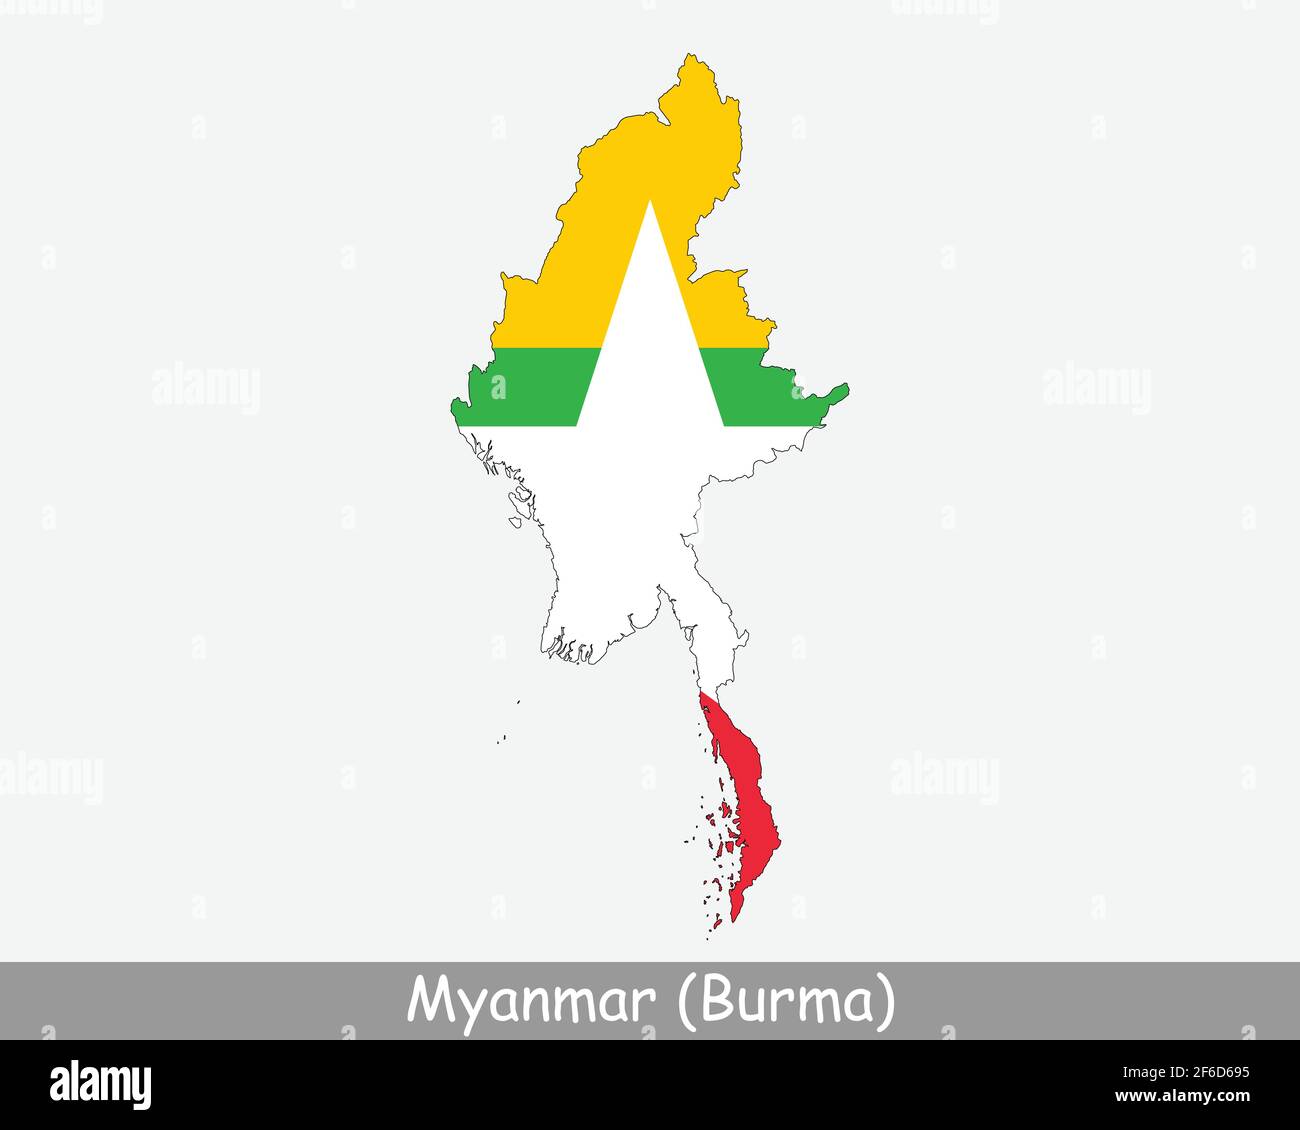 Myanmar Burma Flagge Karte. Karte der Republik der Union von Myanmar mit der birmanischen Nationalflagge isoliert auf weißem Hintergrund. Vektorgrafik. Stock Vektor